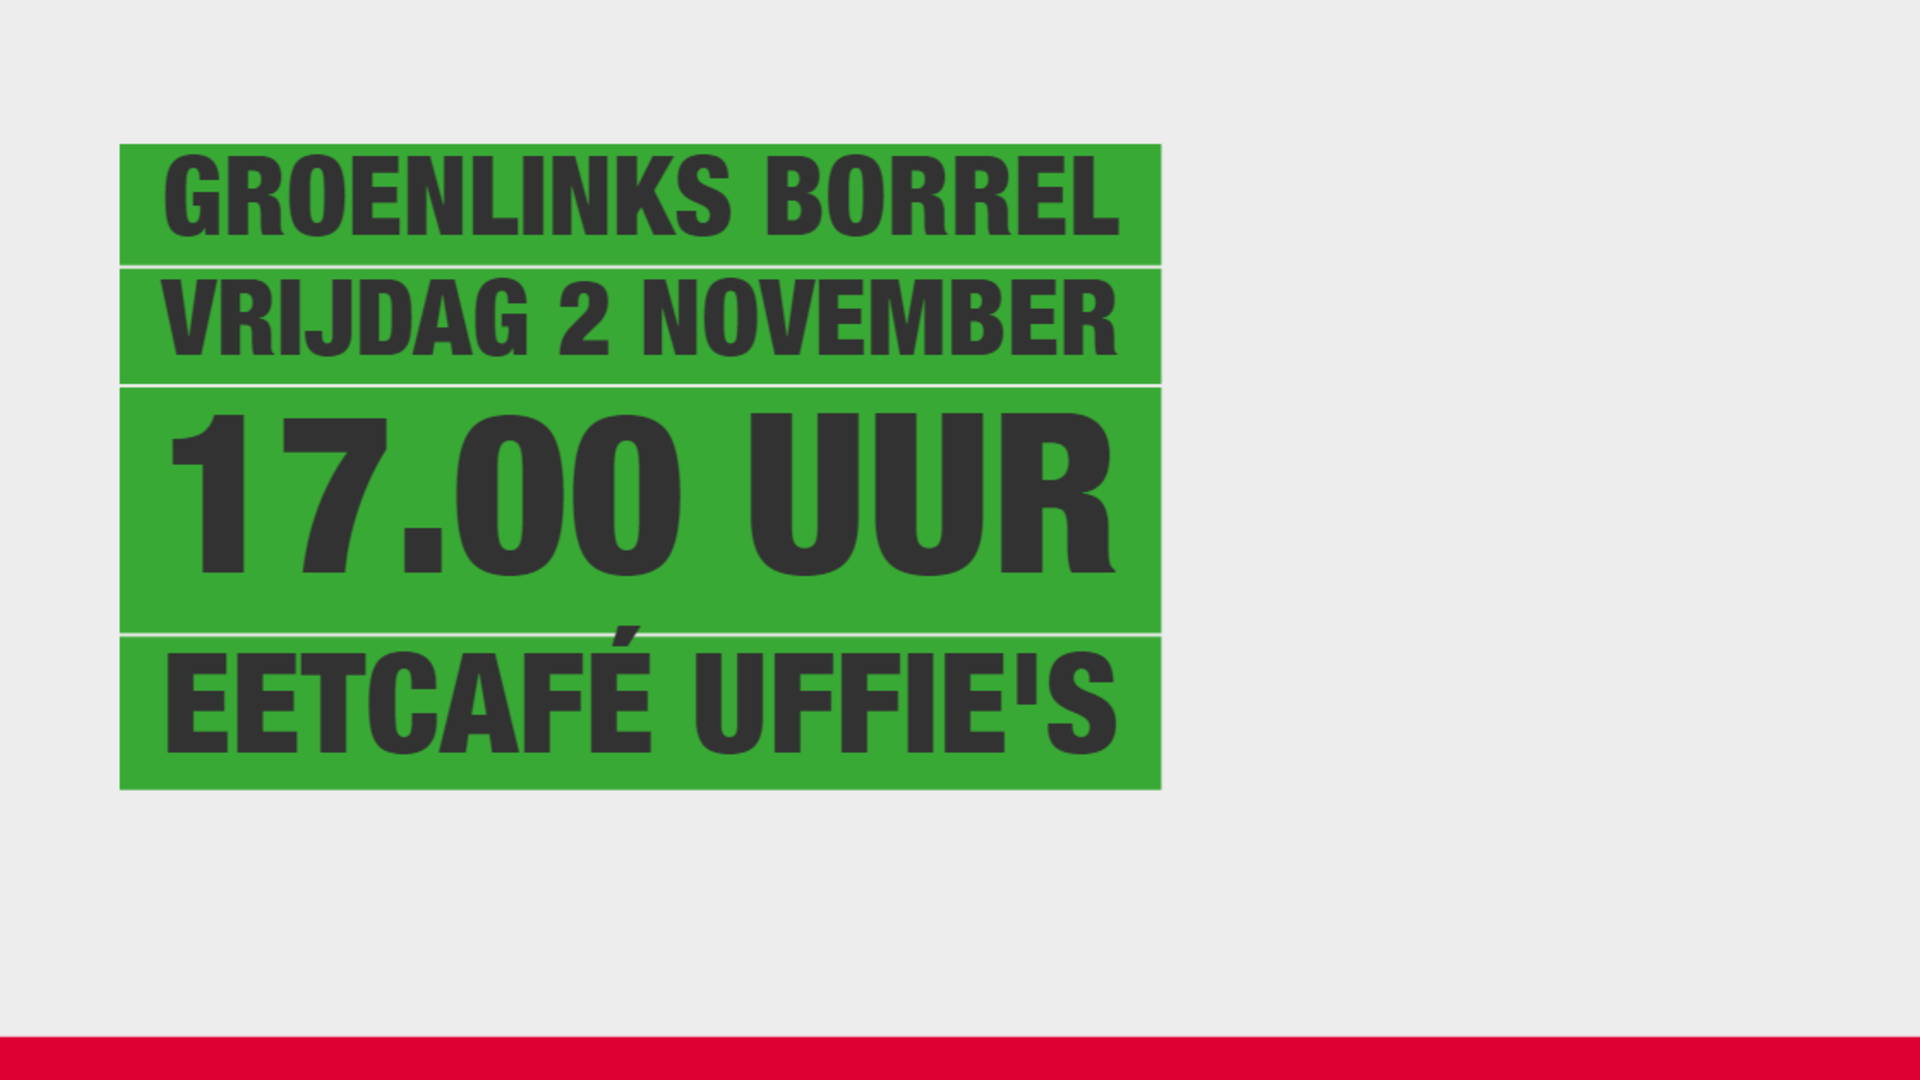 GroenLinks borrel 2 november